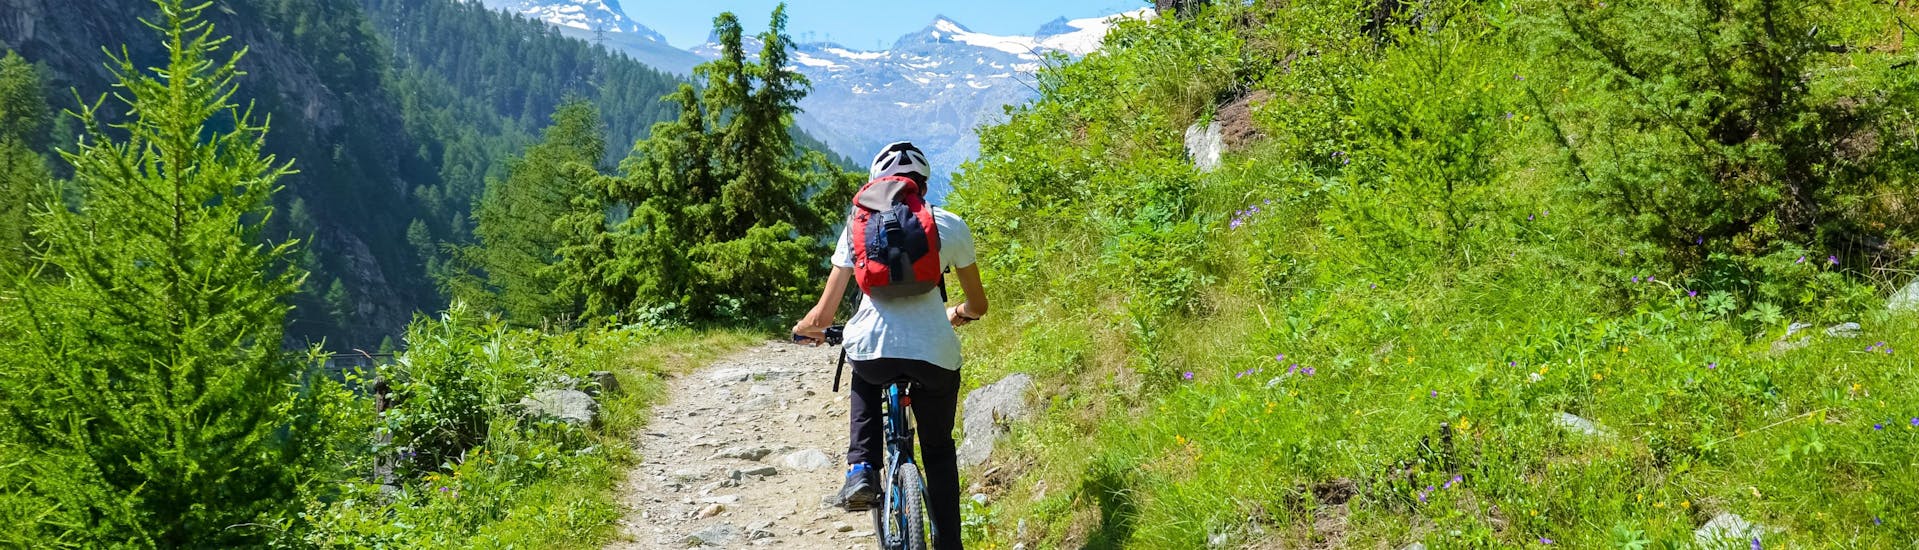 Une femme pédale sur son vélo de location dans le Valais, en Suisse.